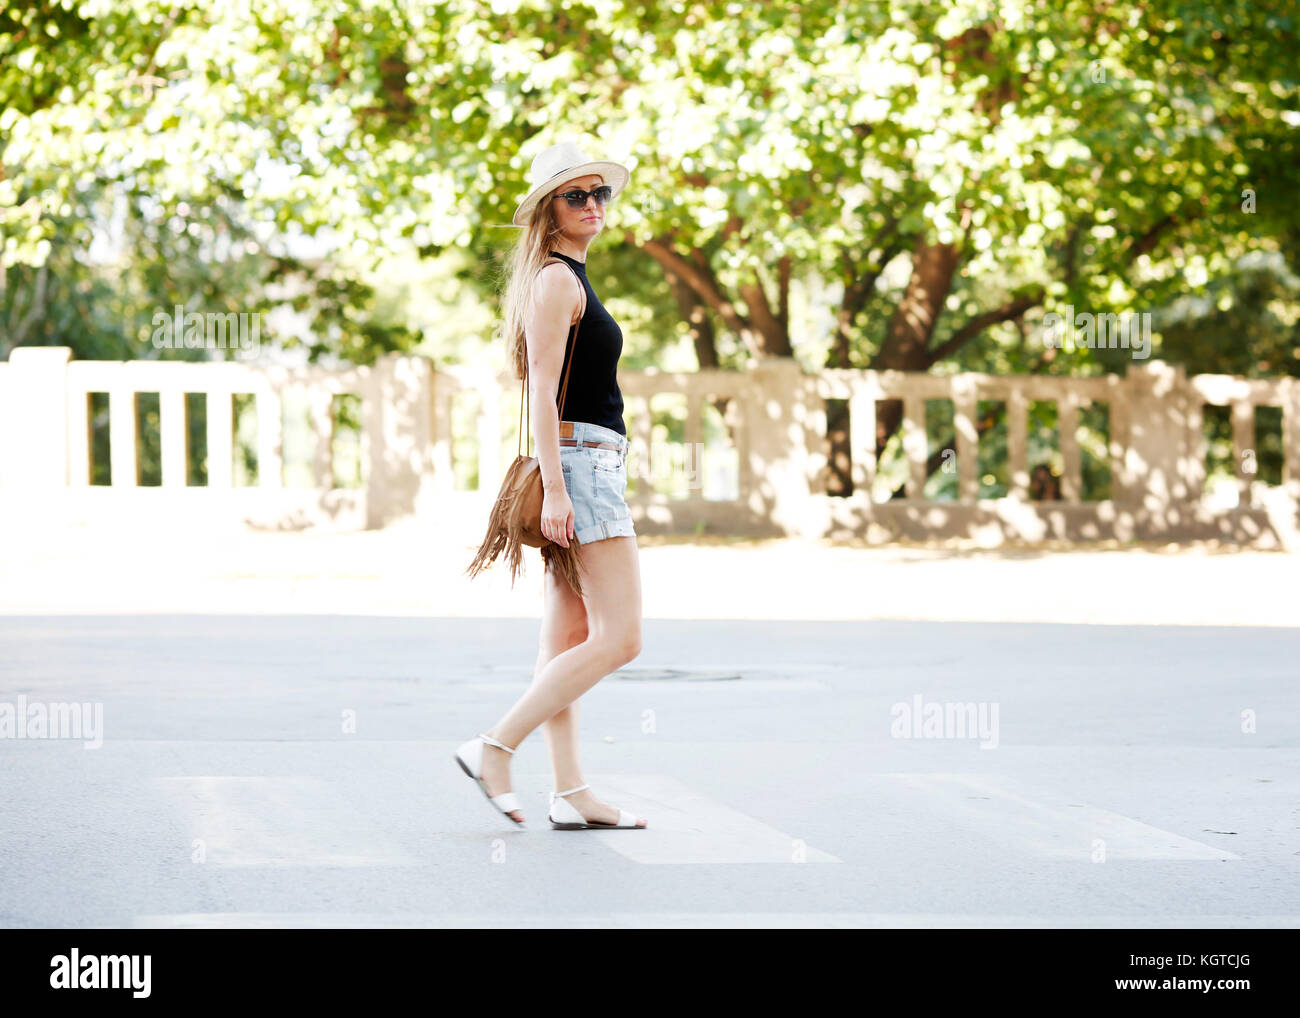 Junge attraktive natürliche blonde Mädchen auf der Straße, Street Style Fotografie Stockfoto